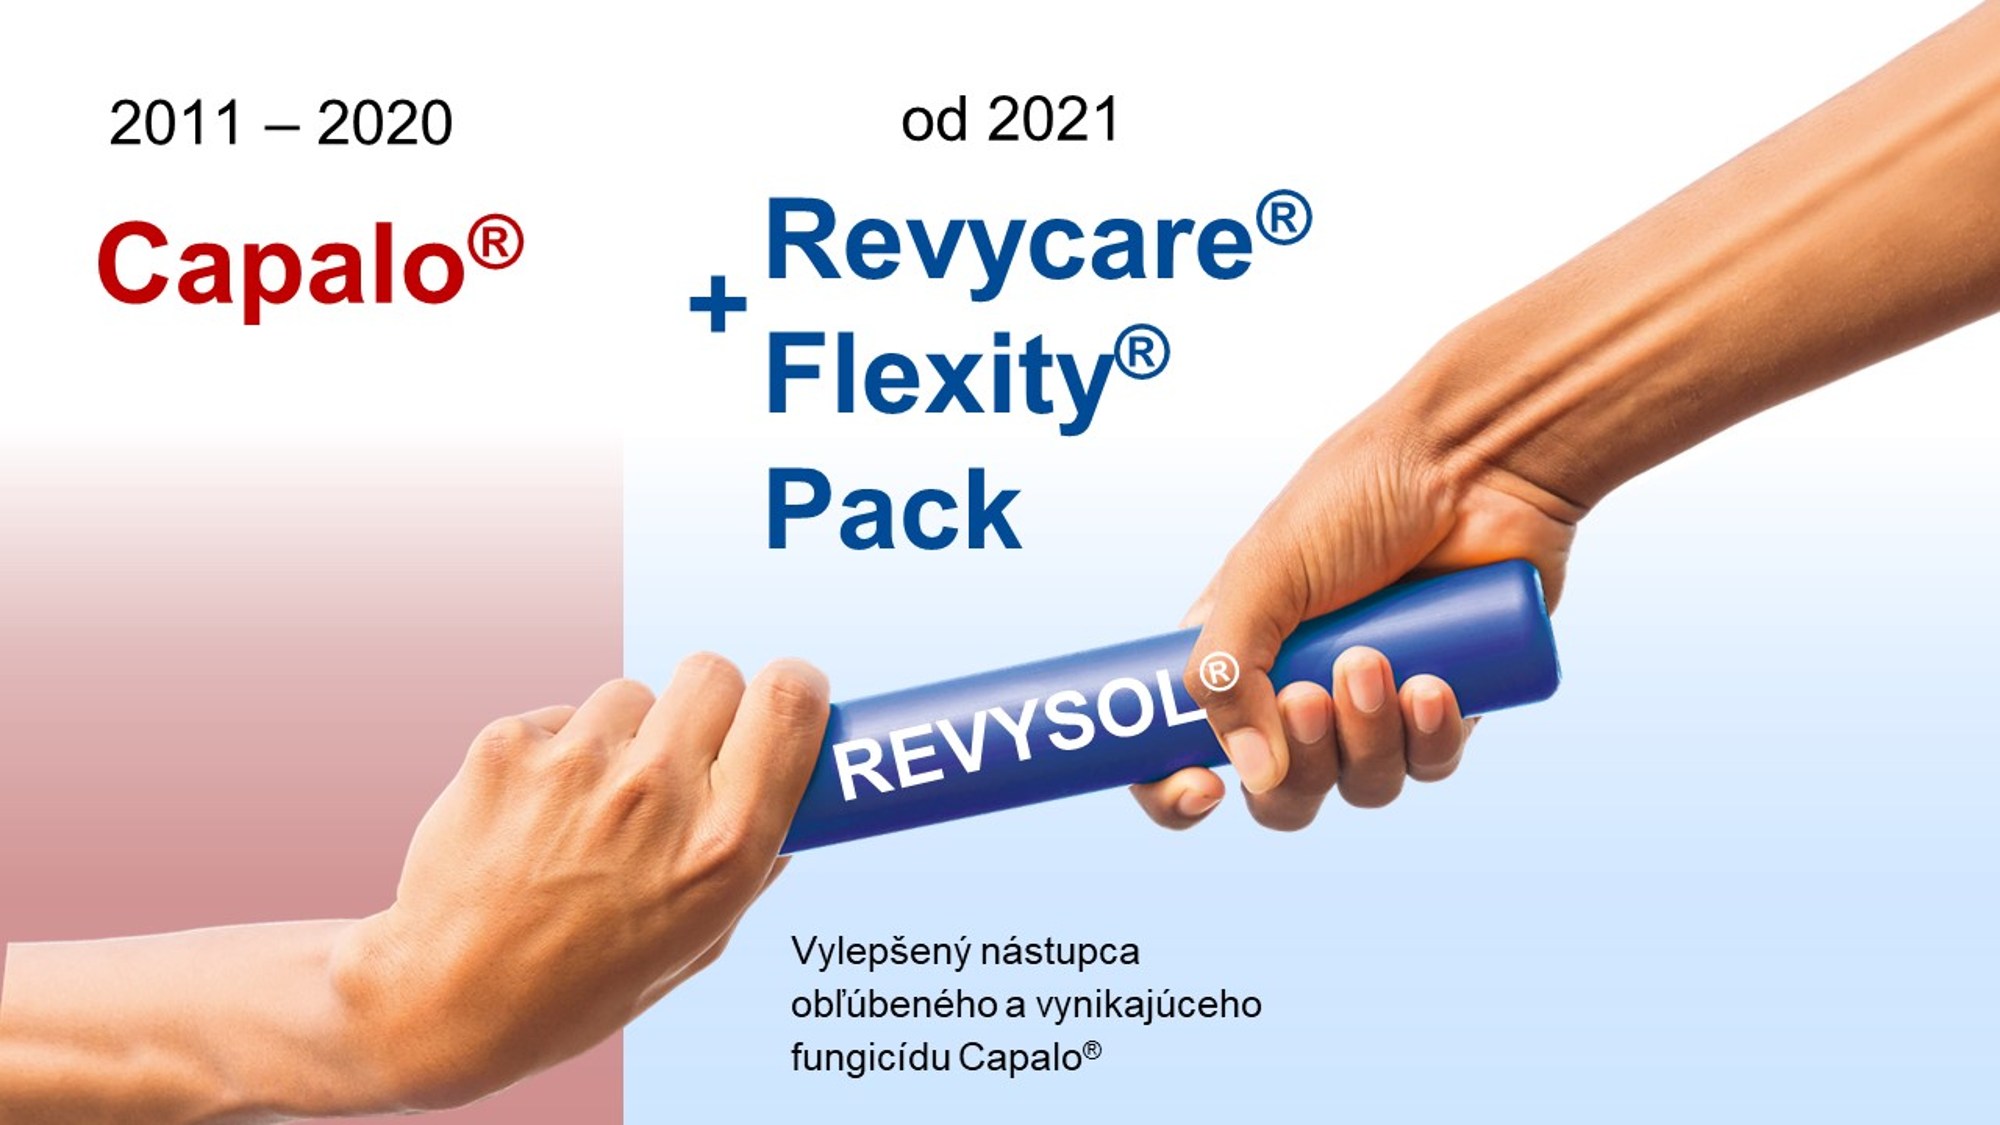 Vylepšený nástupca Revycare® + Flexity® Pack obľúbeného a vynikajúceho fungicídu Capalo®